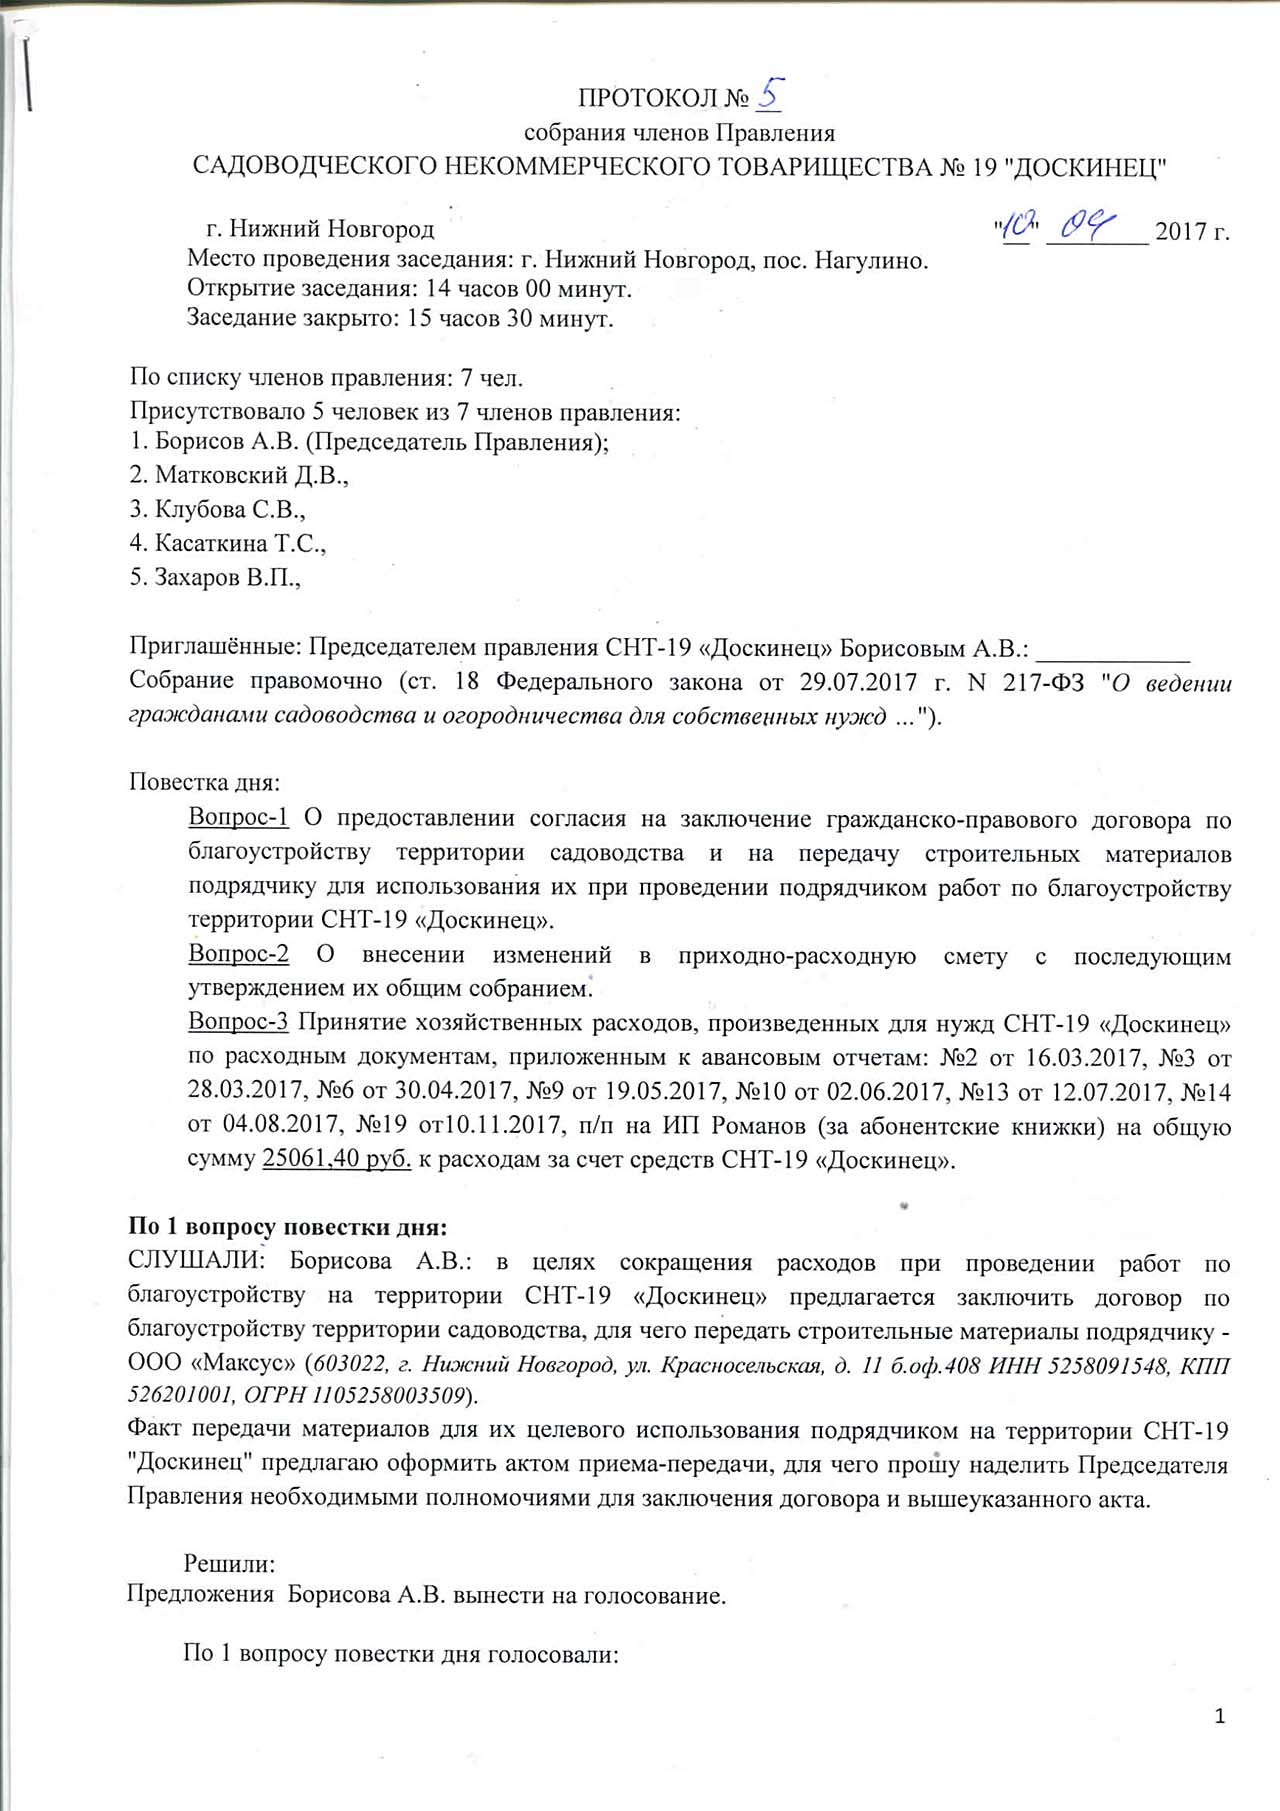 Протокол заседания правления СНТ-19 "Доскинец" №5 страница 1